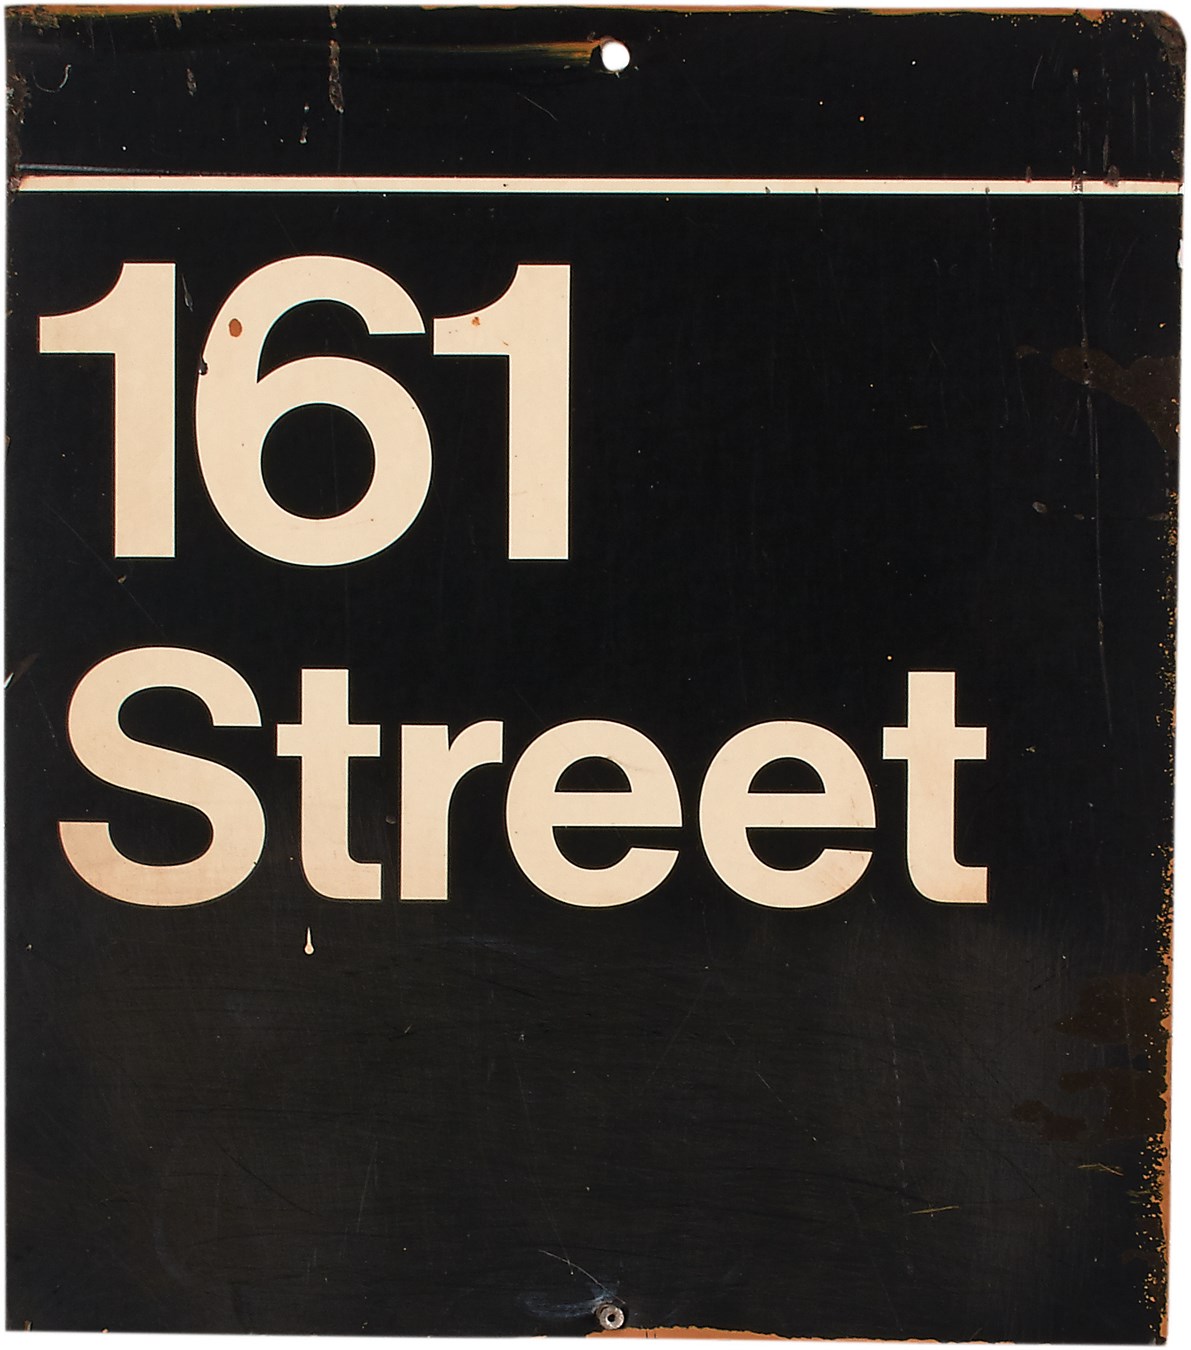 - Circa 1977 Yankee Stadium 161st Street Subway Sign